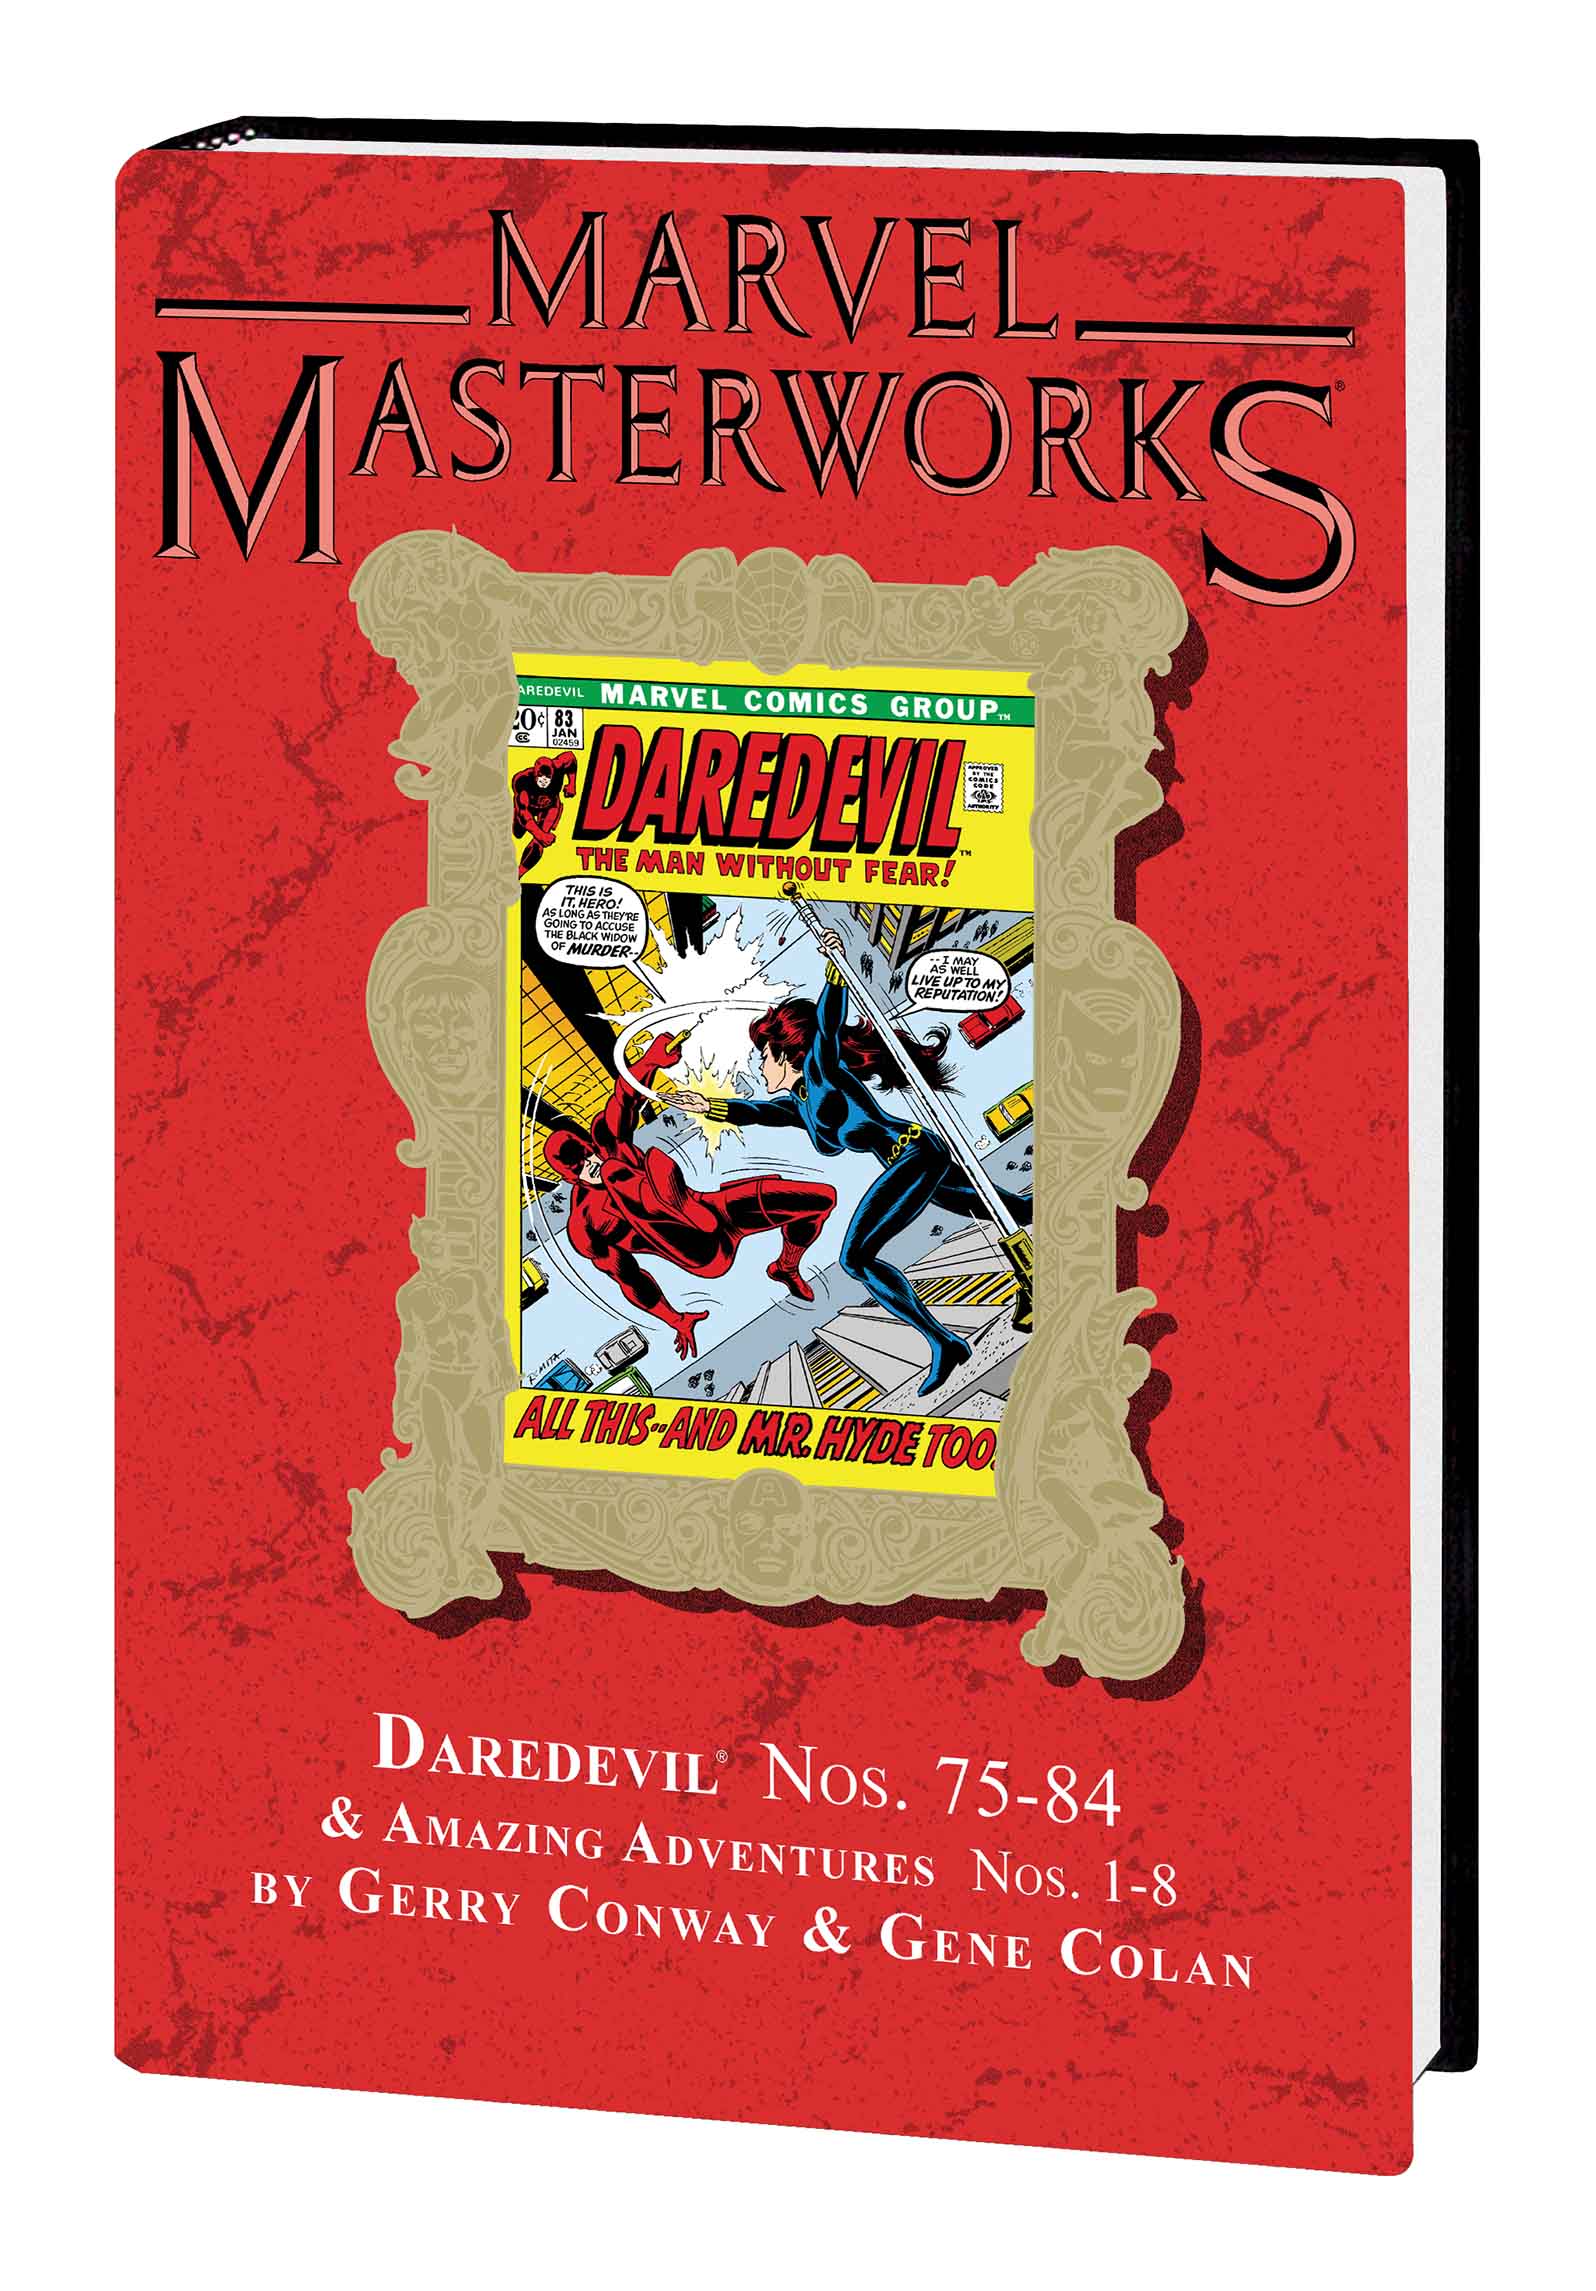 MARVEL MASTERWORKS: DAREDEVIL VOL. 8 HC (Hardcover)